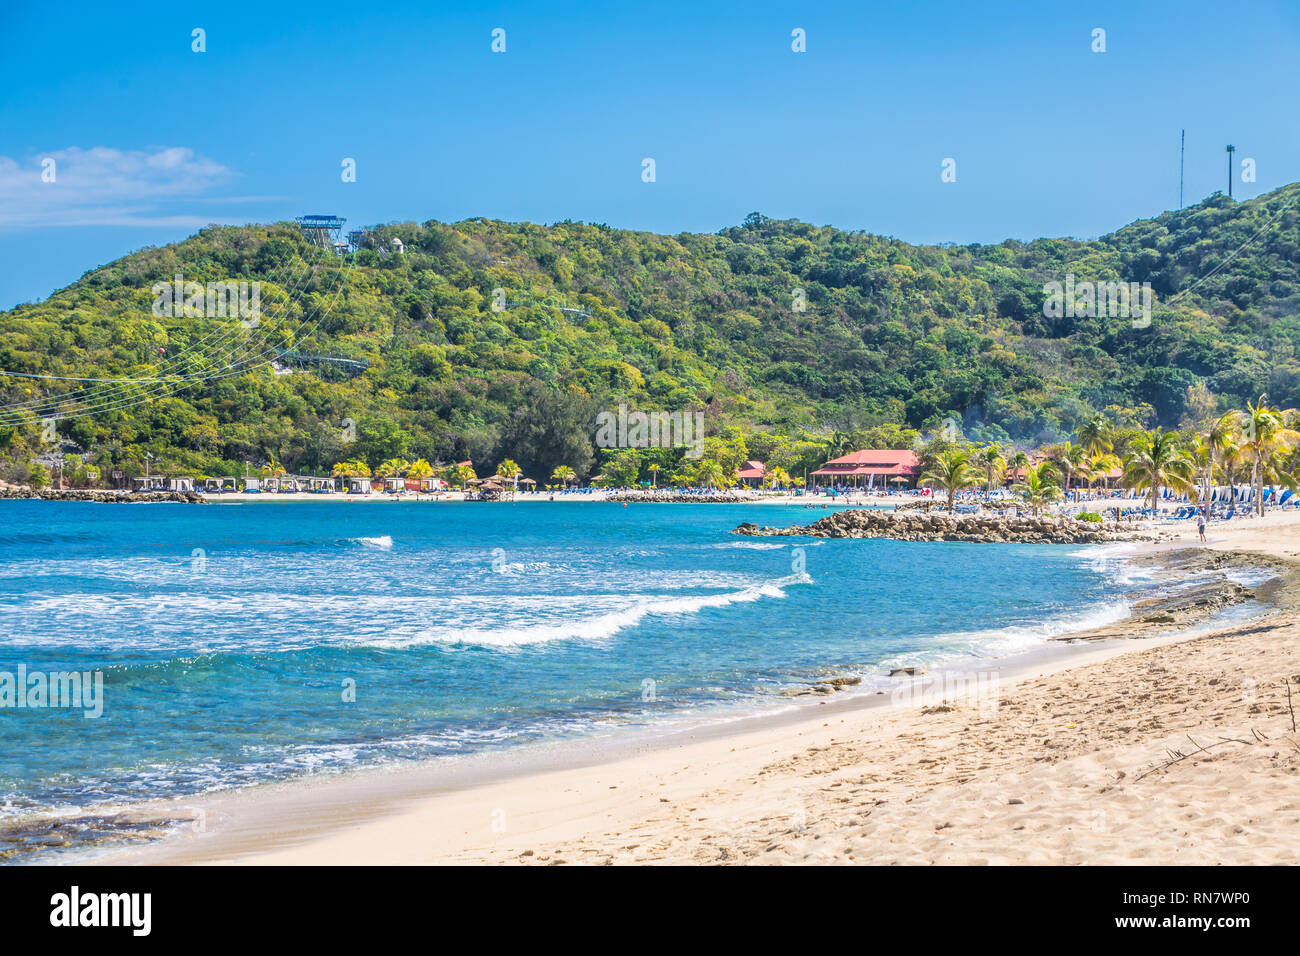 Beach in Labadee Haiti Stock Photo